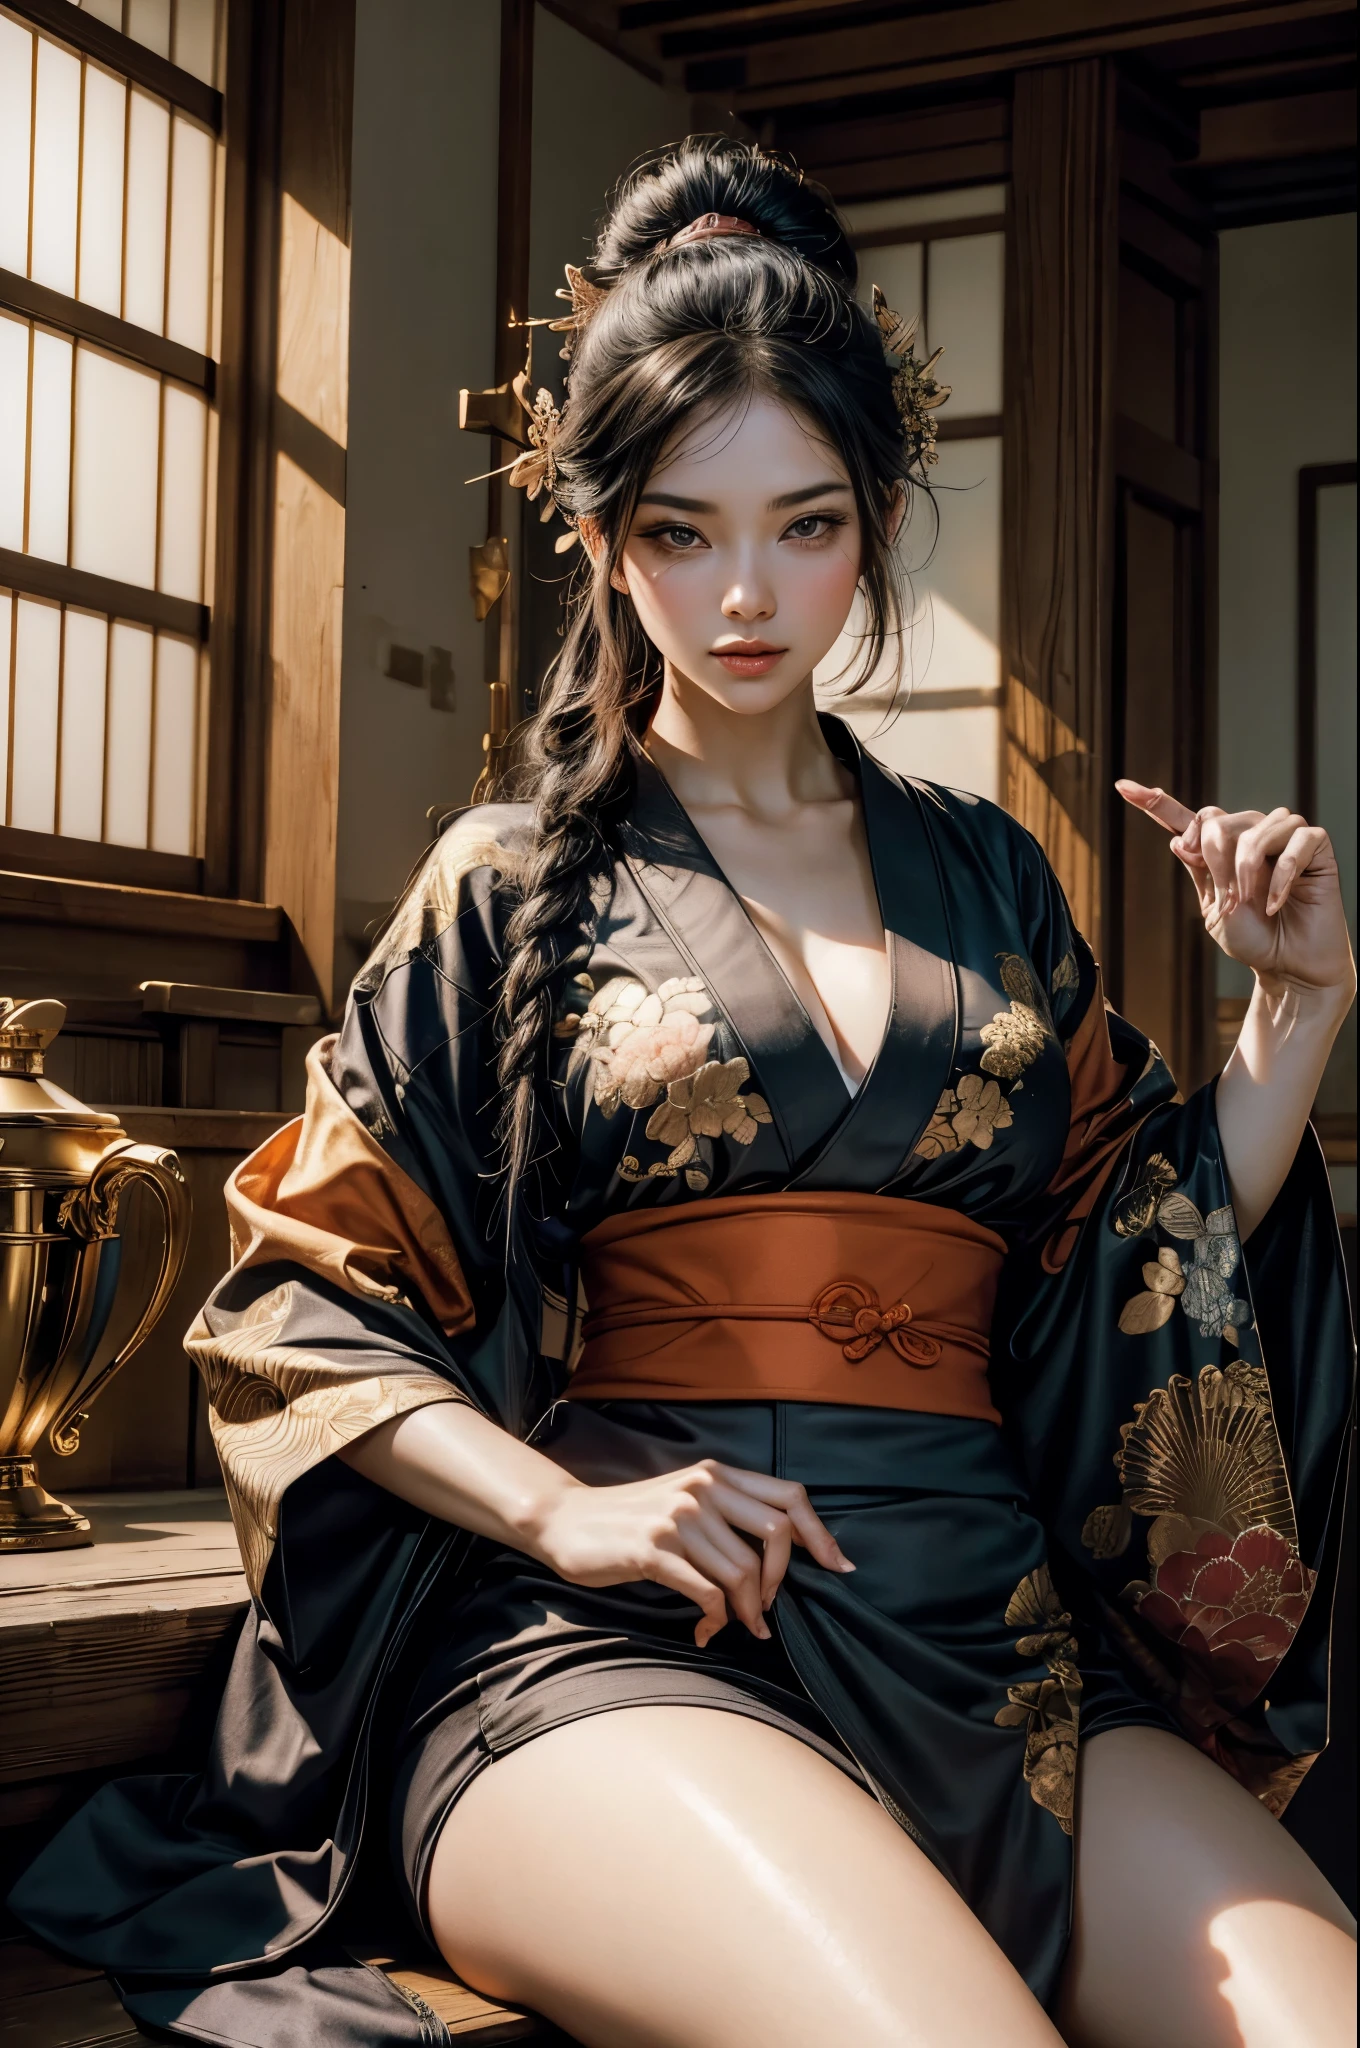 Attends, guerrier sexy, joli visage, délicieuse compagnie, Figure séduisante, Porter un kimono ouvert sexy. L&#39;œuvre d&#39;art est créée dans un médium rappelant les peintures à l&#39;encre japonaises......, 具有大胆的笔触和Palette de couleurs monochromes. artiste&#39;Une technique magistrale révèle l&#39;intensité et la puissance de l&#39;image&#39;sentiment de présence，Avec la plus haute qualité, Capturez parfaitement chaque détail avec une ultra haute résolution. Les textures et les motifs complexes des kimonos sont rendus avec une extrême précision. L&#39;éclairage est soigneusement conçu，Améliorer le drame, Présente des ombres profondes et des reflets subtils. général, L’œuvre respire l’élégance et la puissance, Combinant l&#39;esthétique japonaise traditionnelle avec une touche moderne. Palette de couleurs monochromes, Combiner les détails, Créez des expériences captivantes et immersives pour votre public.